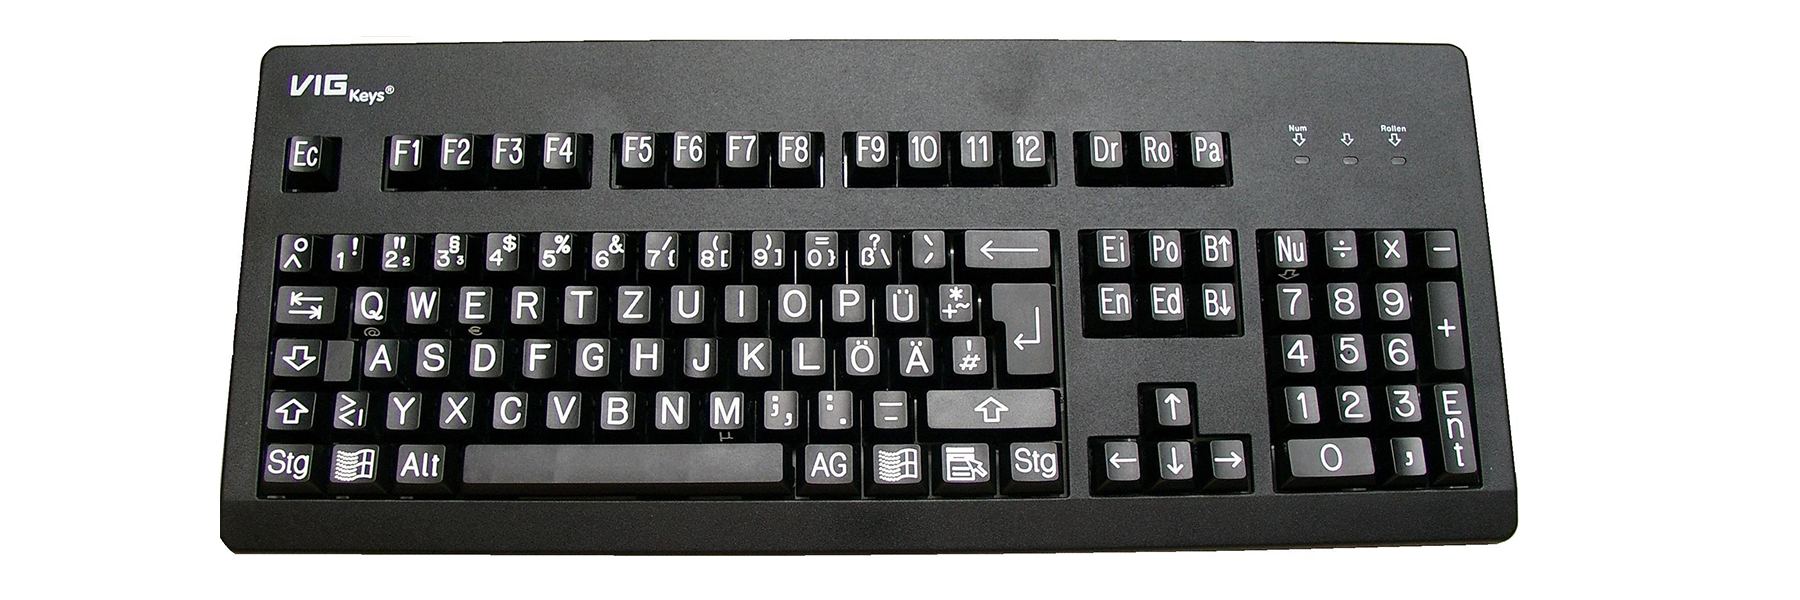 Abbildung einer Vargian Tastatur